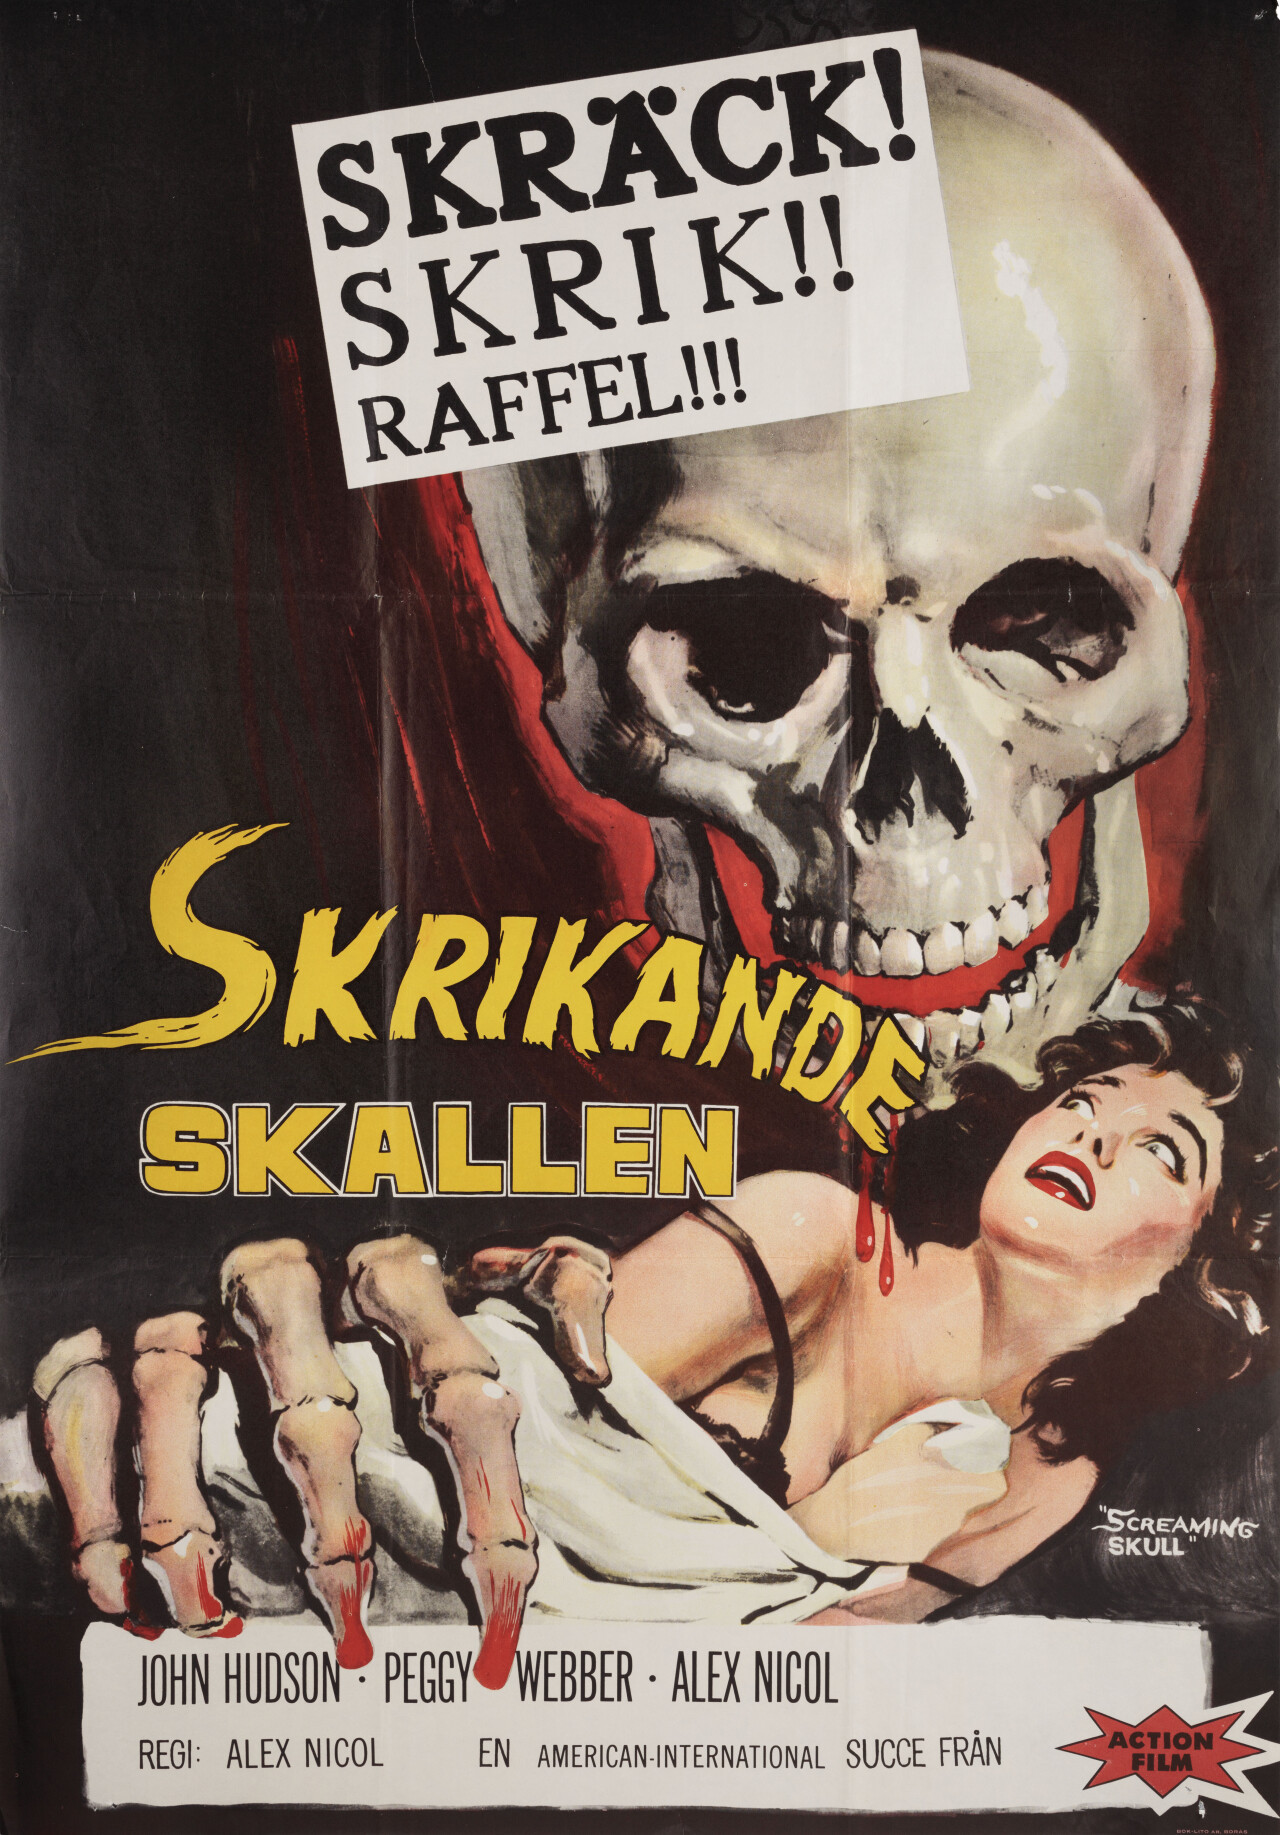 Кричащий череп (The Screaming Skull, 1958), режиссёр Алекс Николь, шведский постер к фильму (ужасы, 1958 год)